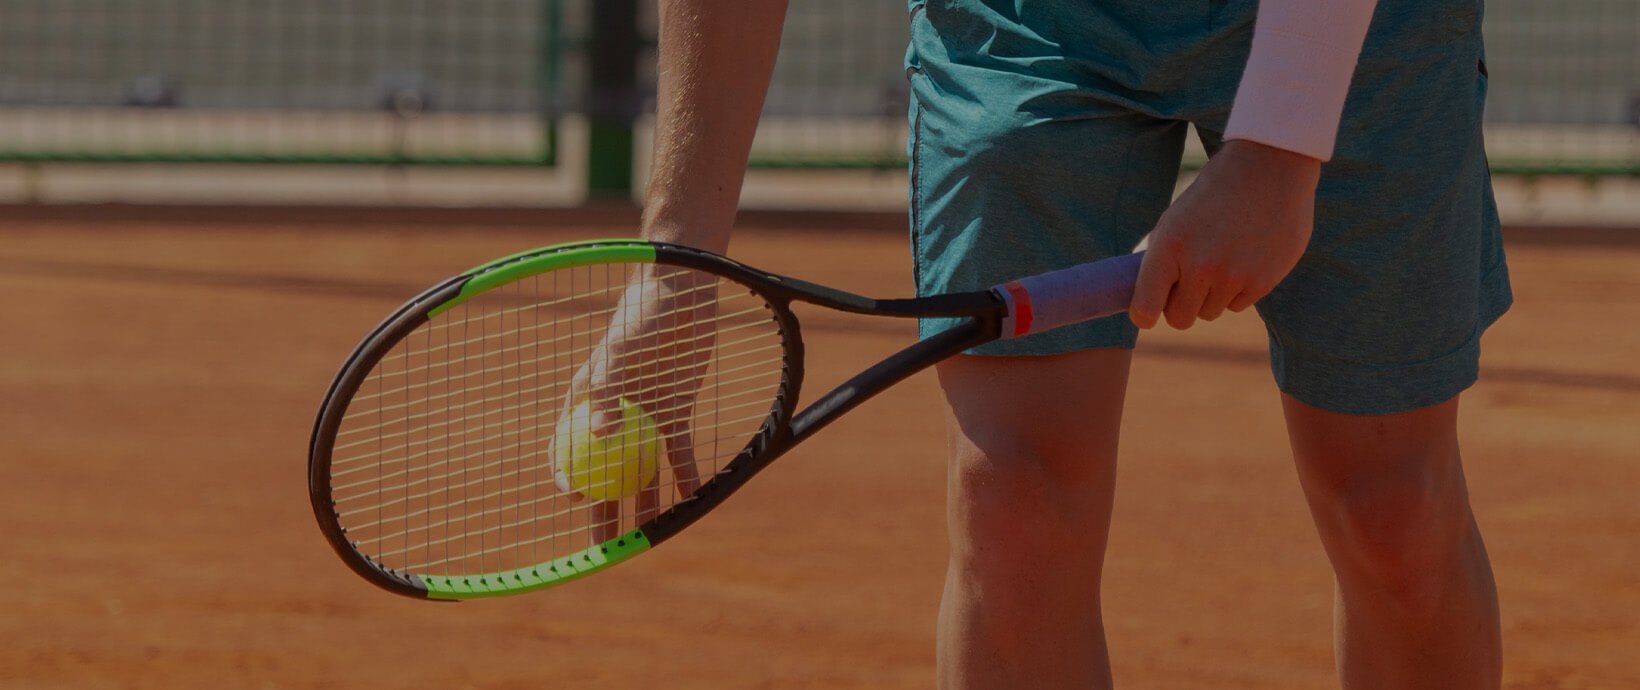 Altair_DigitalDebunking_Testing-Tennis-Racket-Strength_Newsroom_Hero